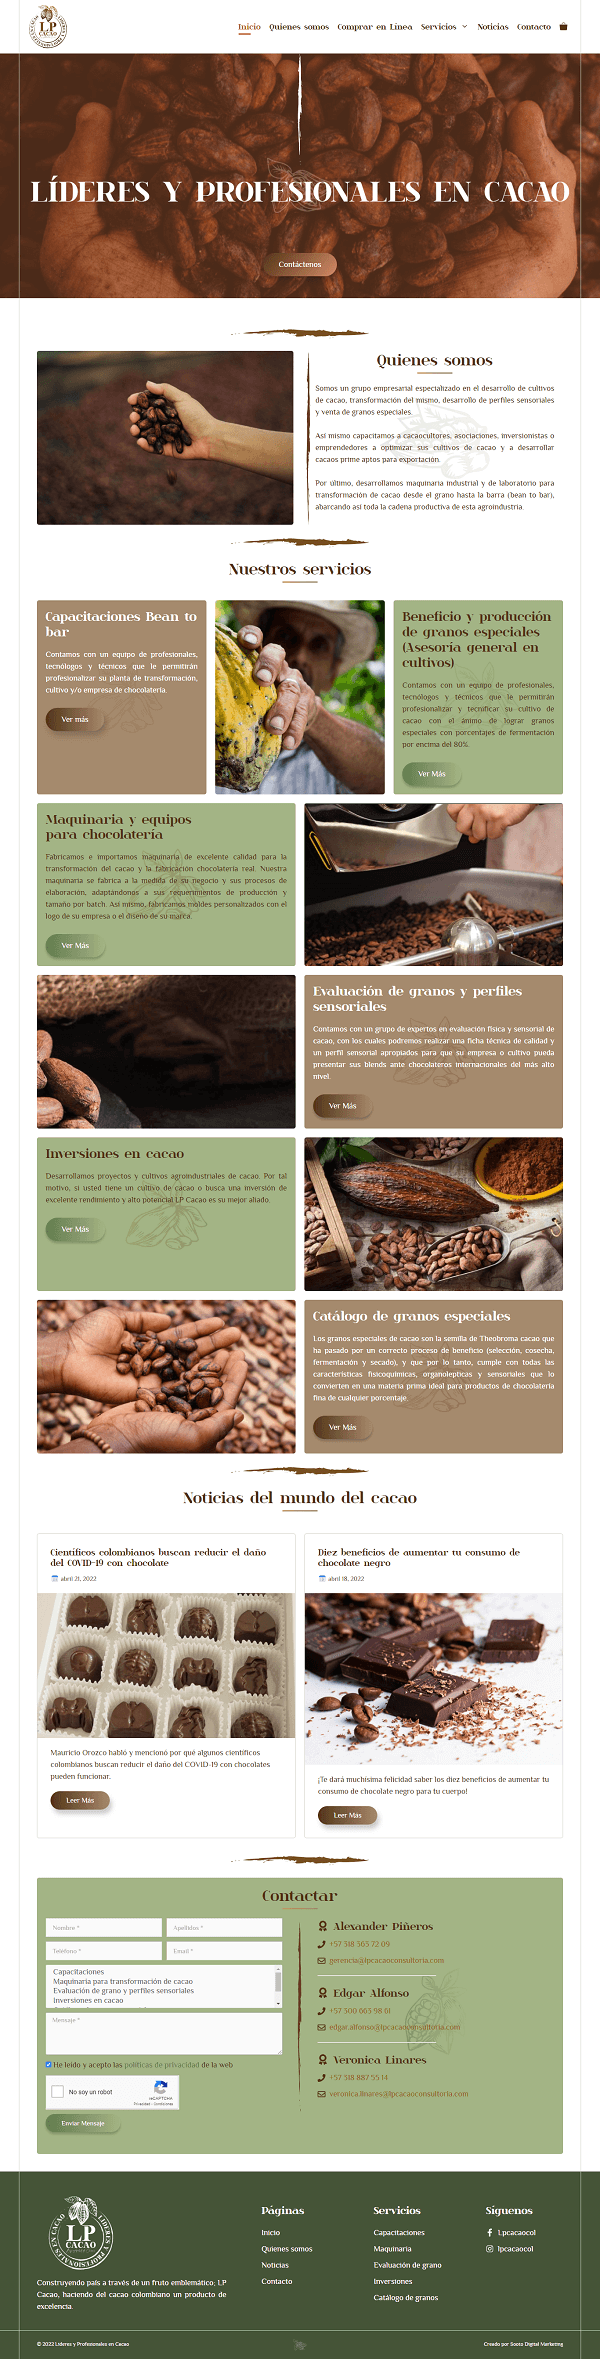 Lideres y Profesionales en Cacao - proyecto sooto ditial